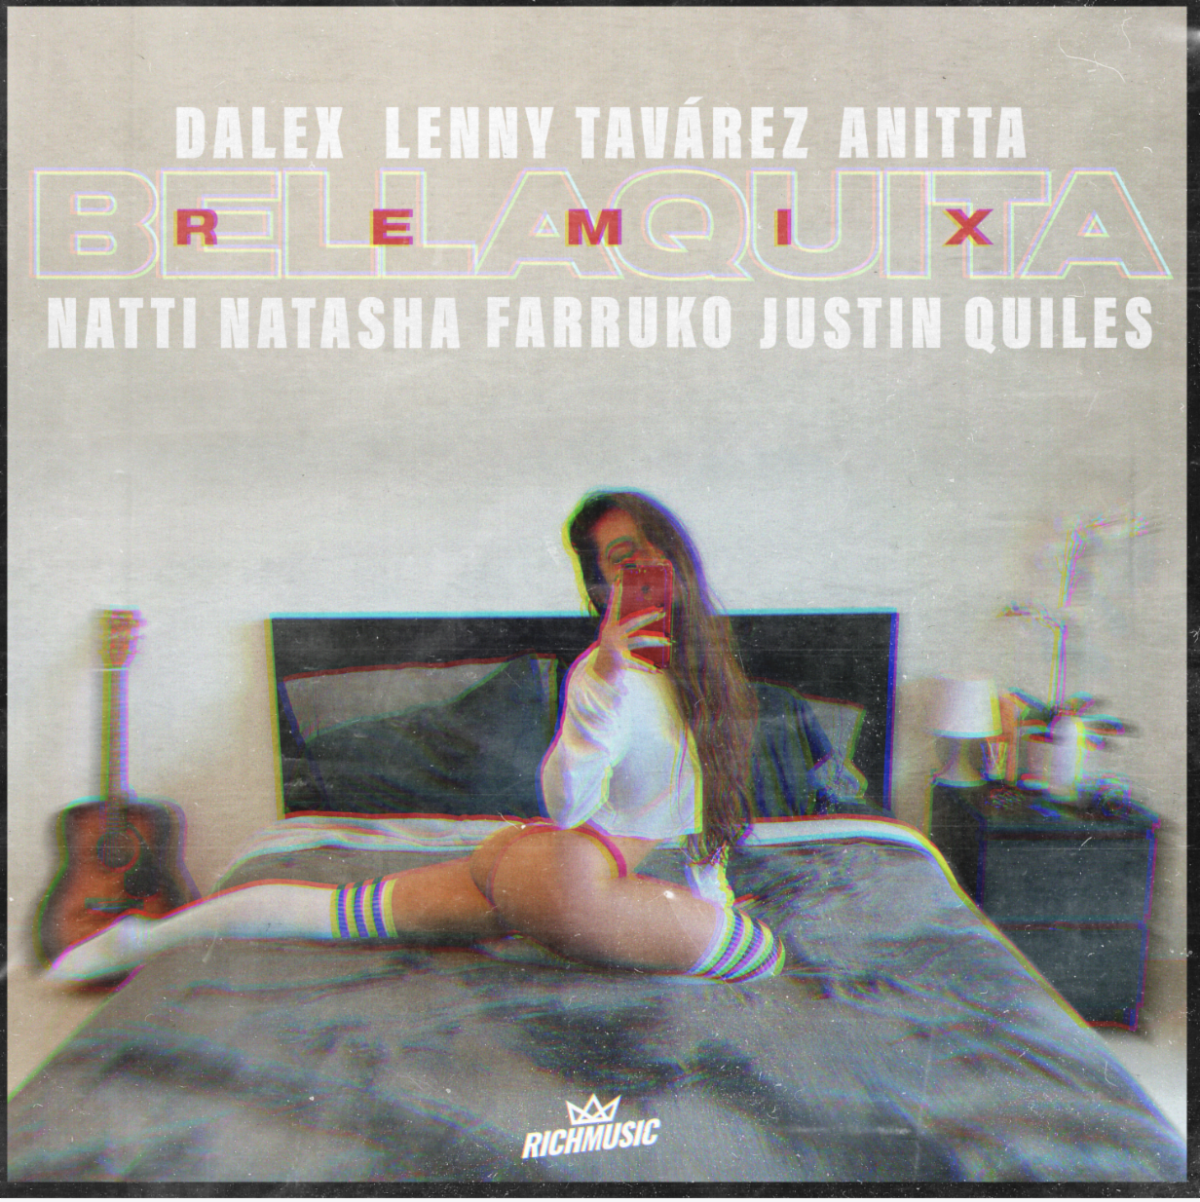 DALEX lanza nueva explosión musical ‘Bellaquita Remix’